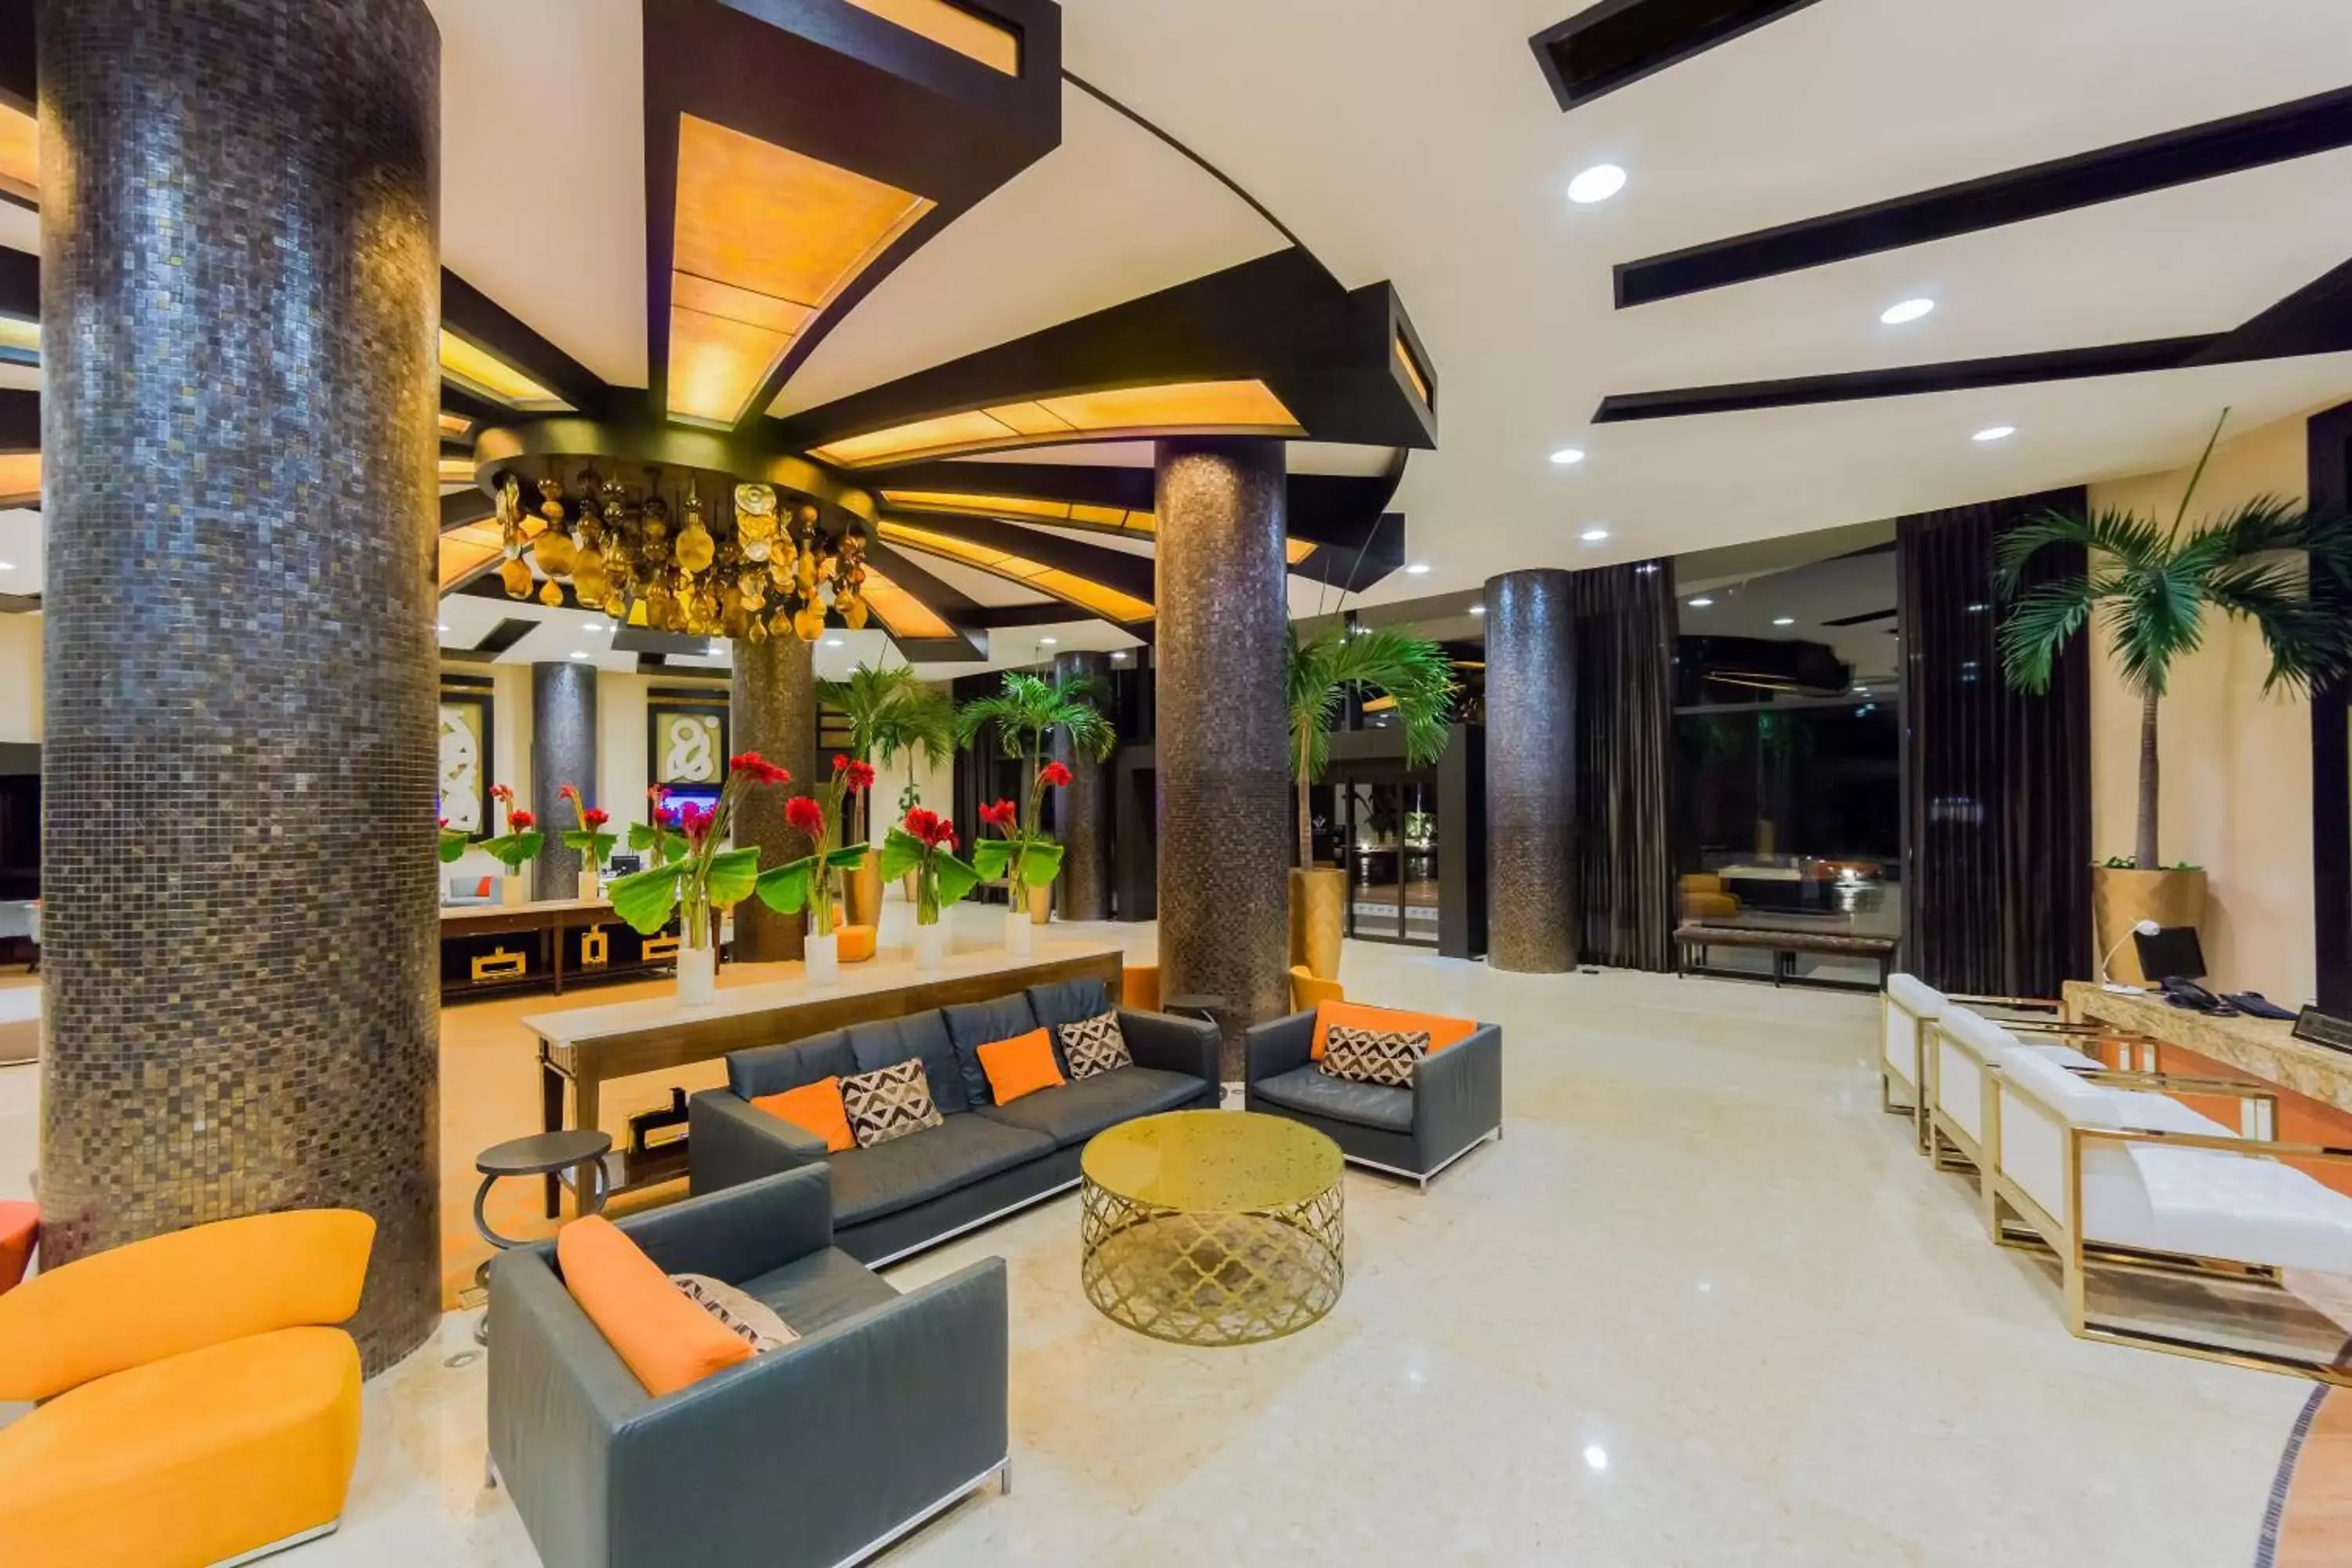 Lobby or reception, Lobby/Reception in Villa del Palmar Cancun Luxury Beach Resort & Spa